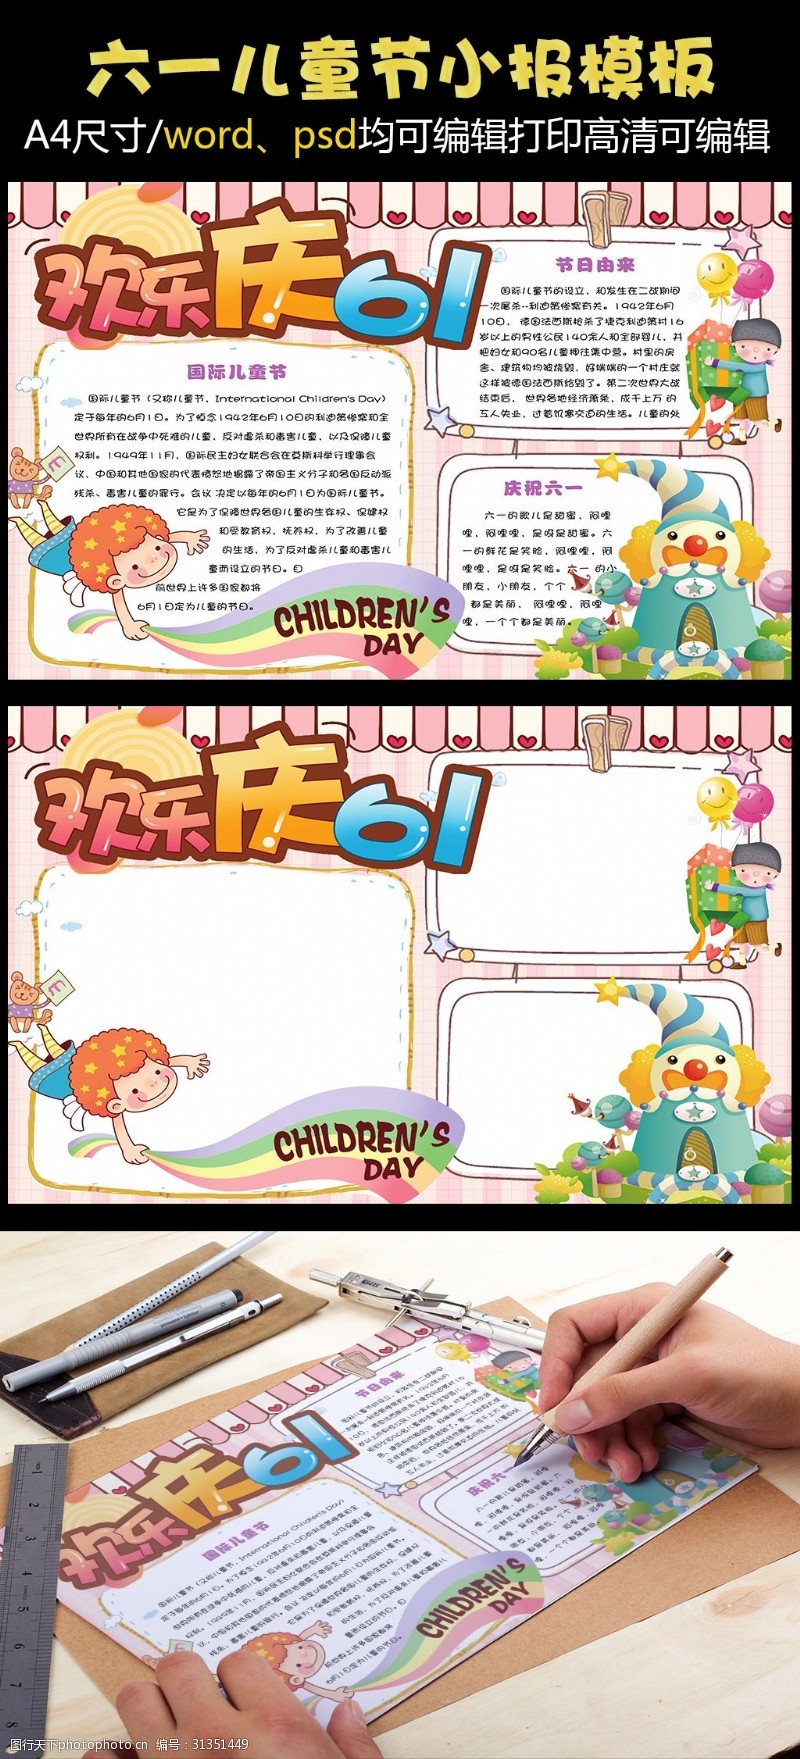 快乐61卡通六一国际儿童节电子小报手抄报模板